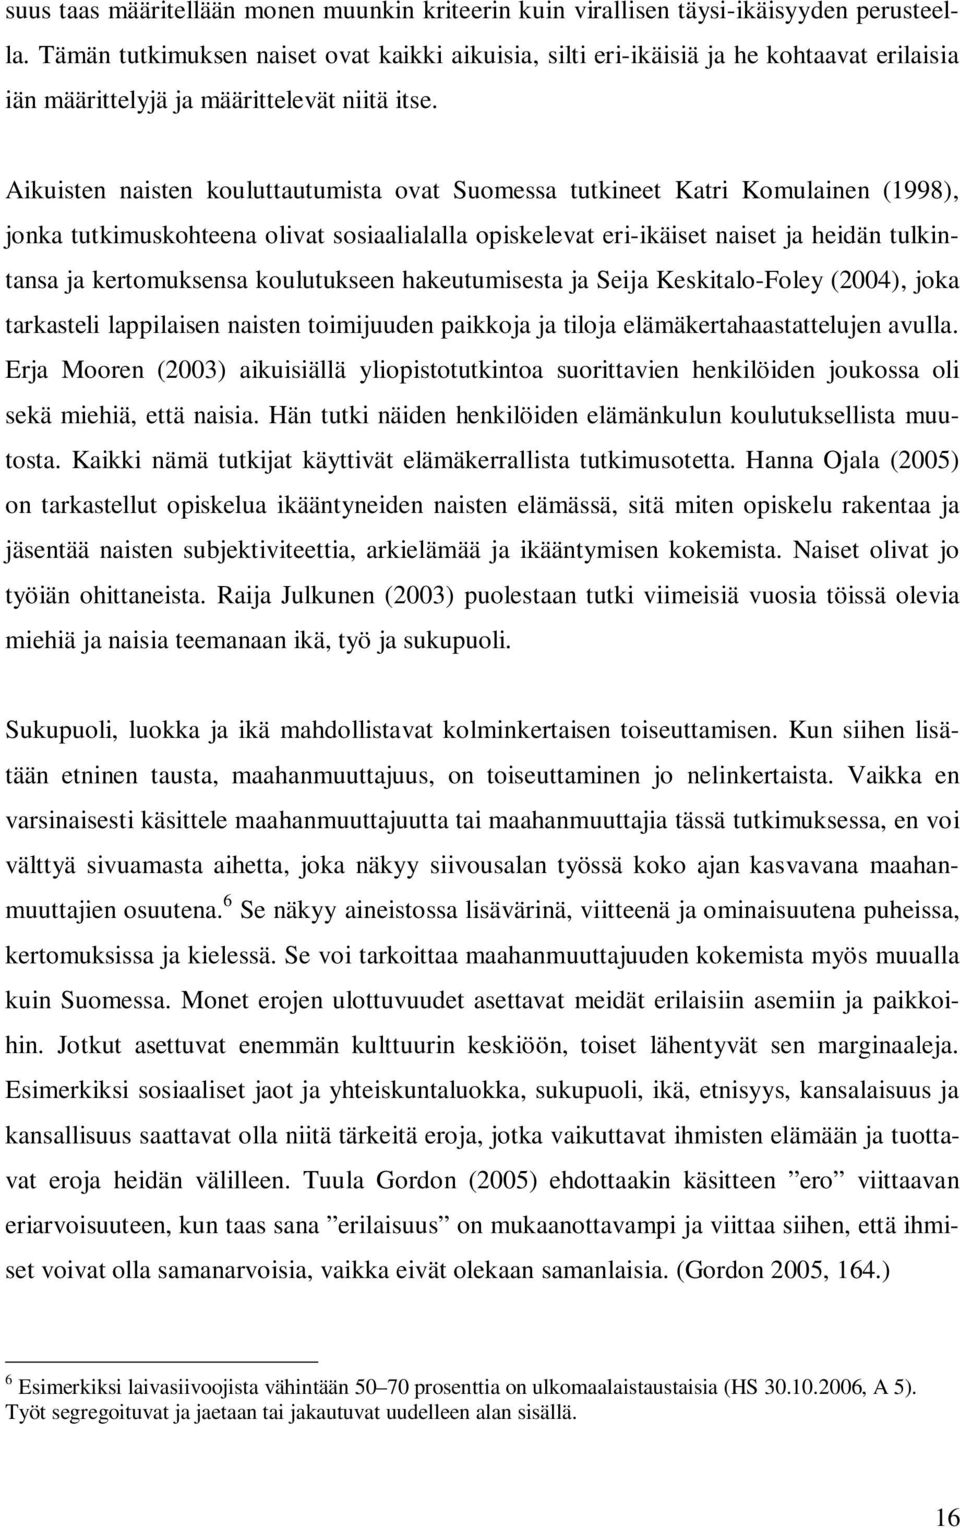 Aikuisten naisten kouluttautumista ovat Suomessa tutkineet Katri Komulainen (1998), jonka tutkimuskohteena olivat sosiaalialalla opiskelevat eri-ikäiset naiset ja heidän tulkintansa ja kertomuksensa